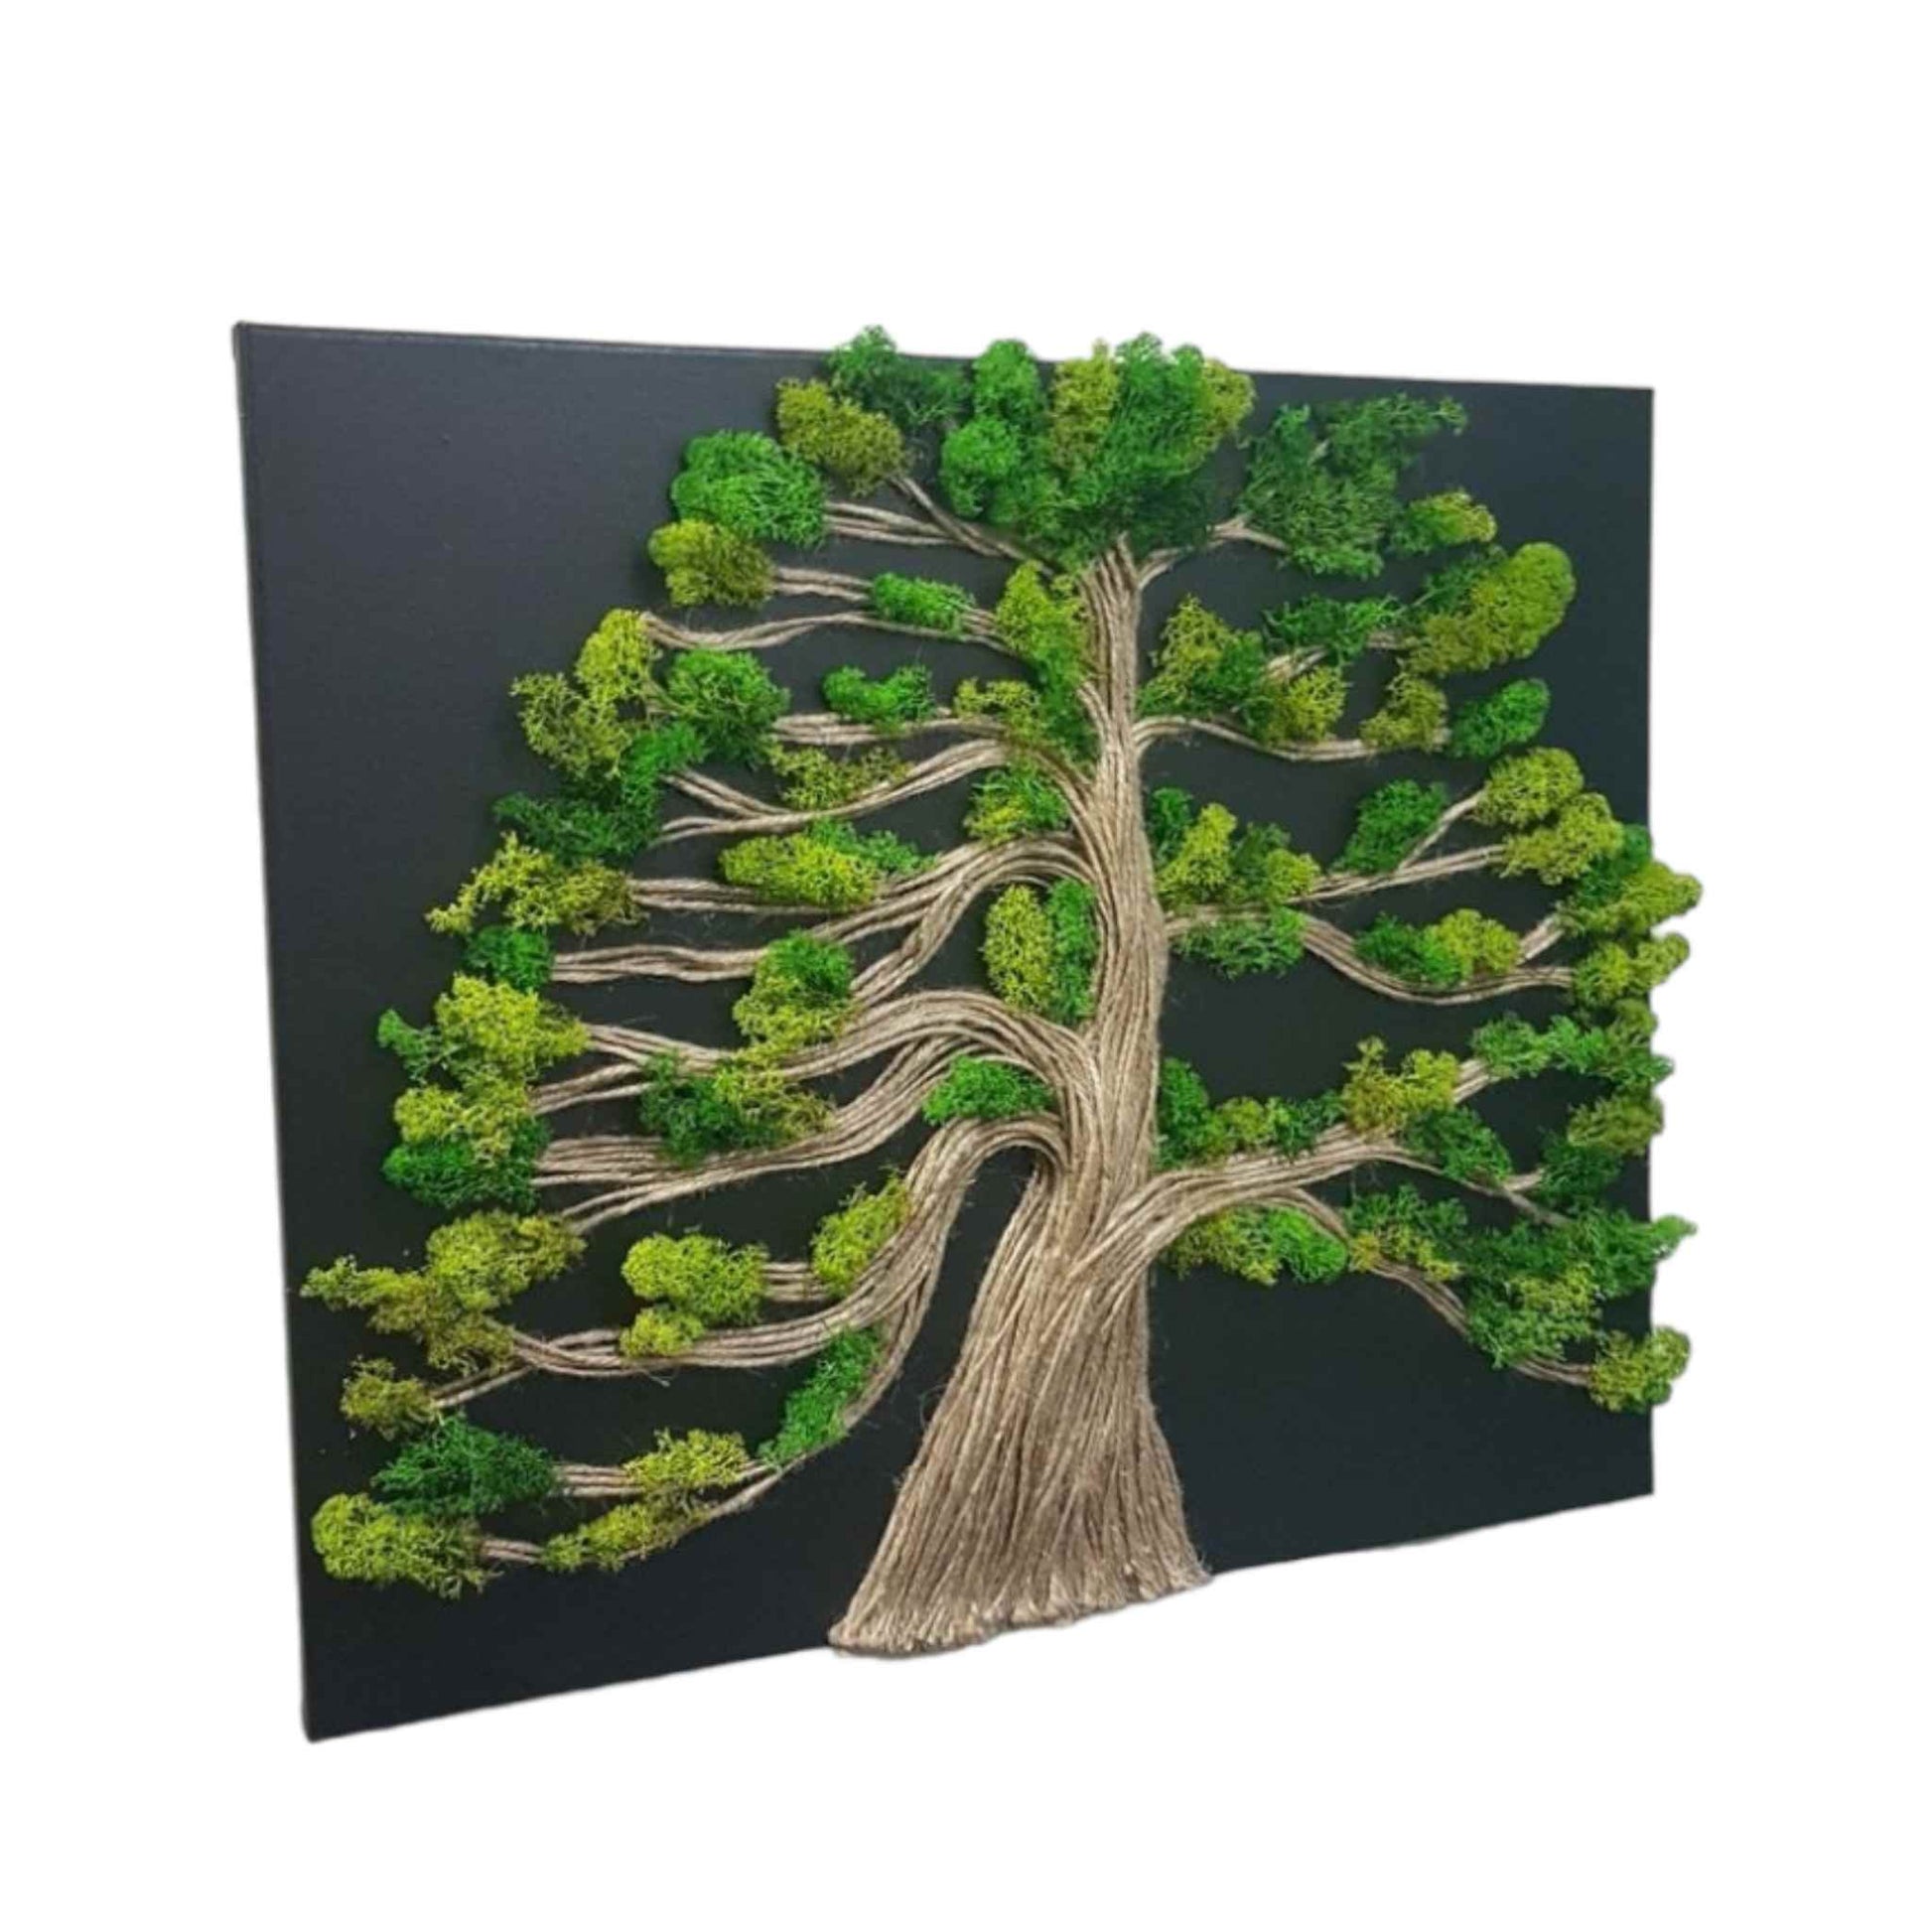 Tablou cu licheni naturali, copac 3D si sfoara, realizat handmade, manual, format landscape de 30x40 cm.